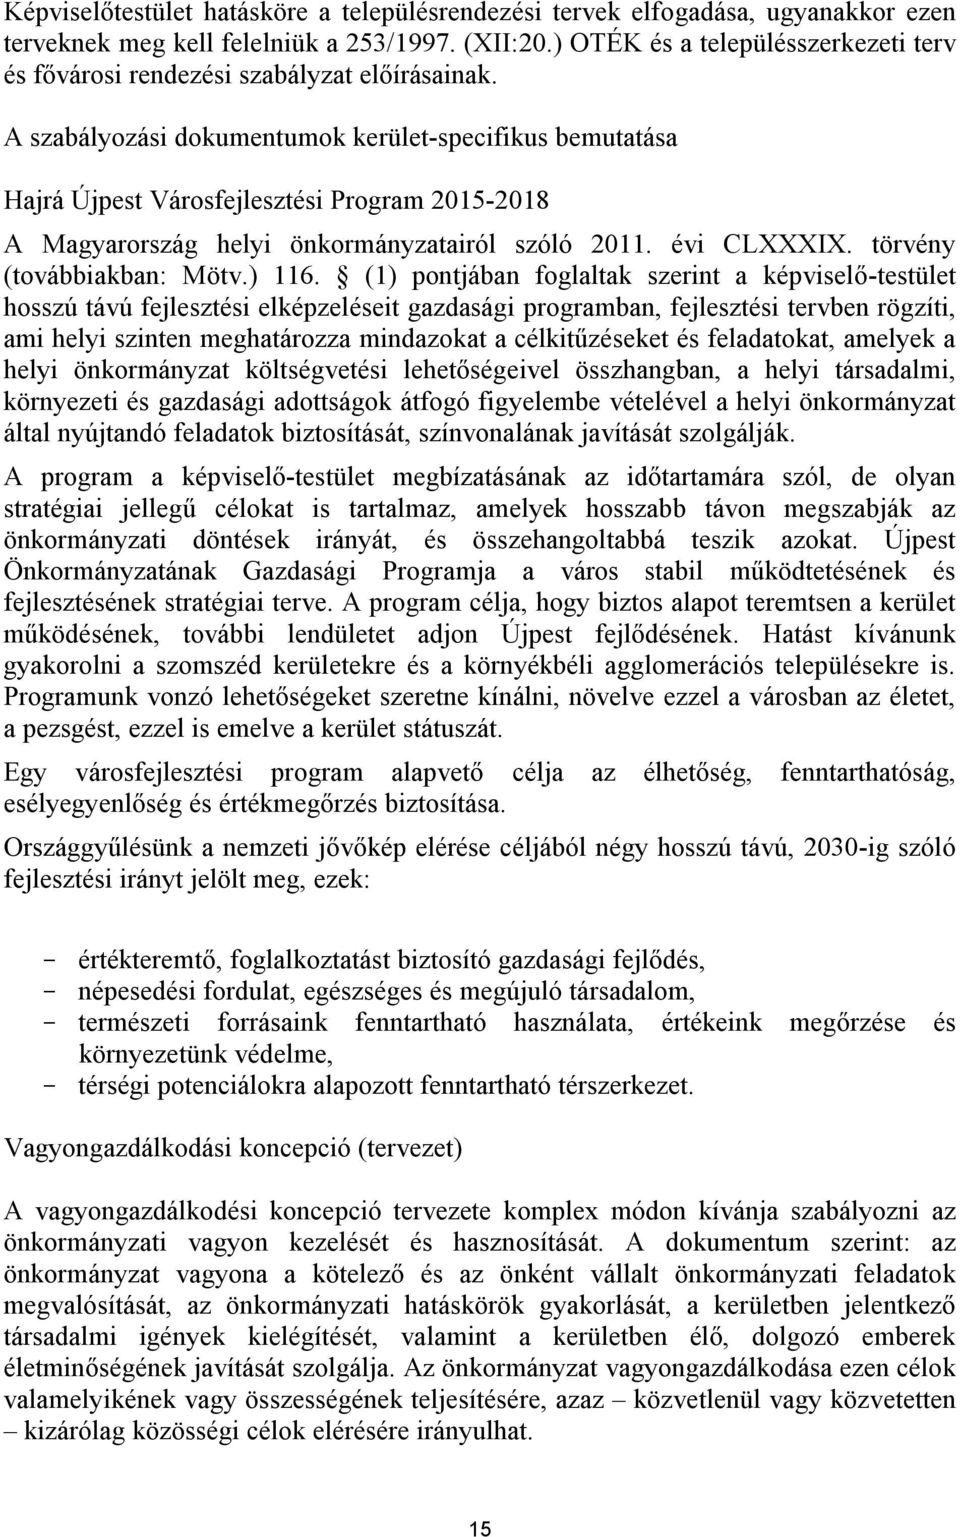 A szabályozási dokumentumok kerület-specifikus bemutatása Hajrá Újpest Városfejlesztési Program 2015-2018 A Magyarország helyi önkormányzatairól szóló 2011. évi CLXXXIX. törvény (továbbiakban: Mötv.